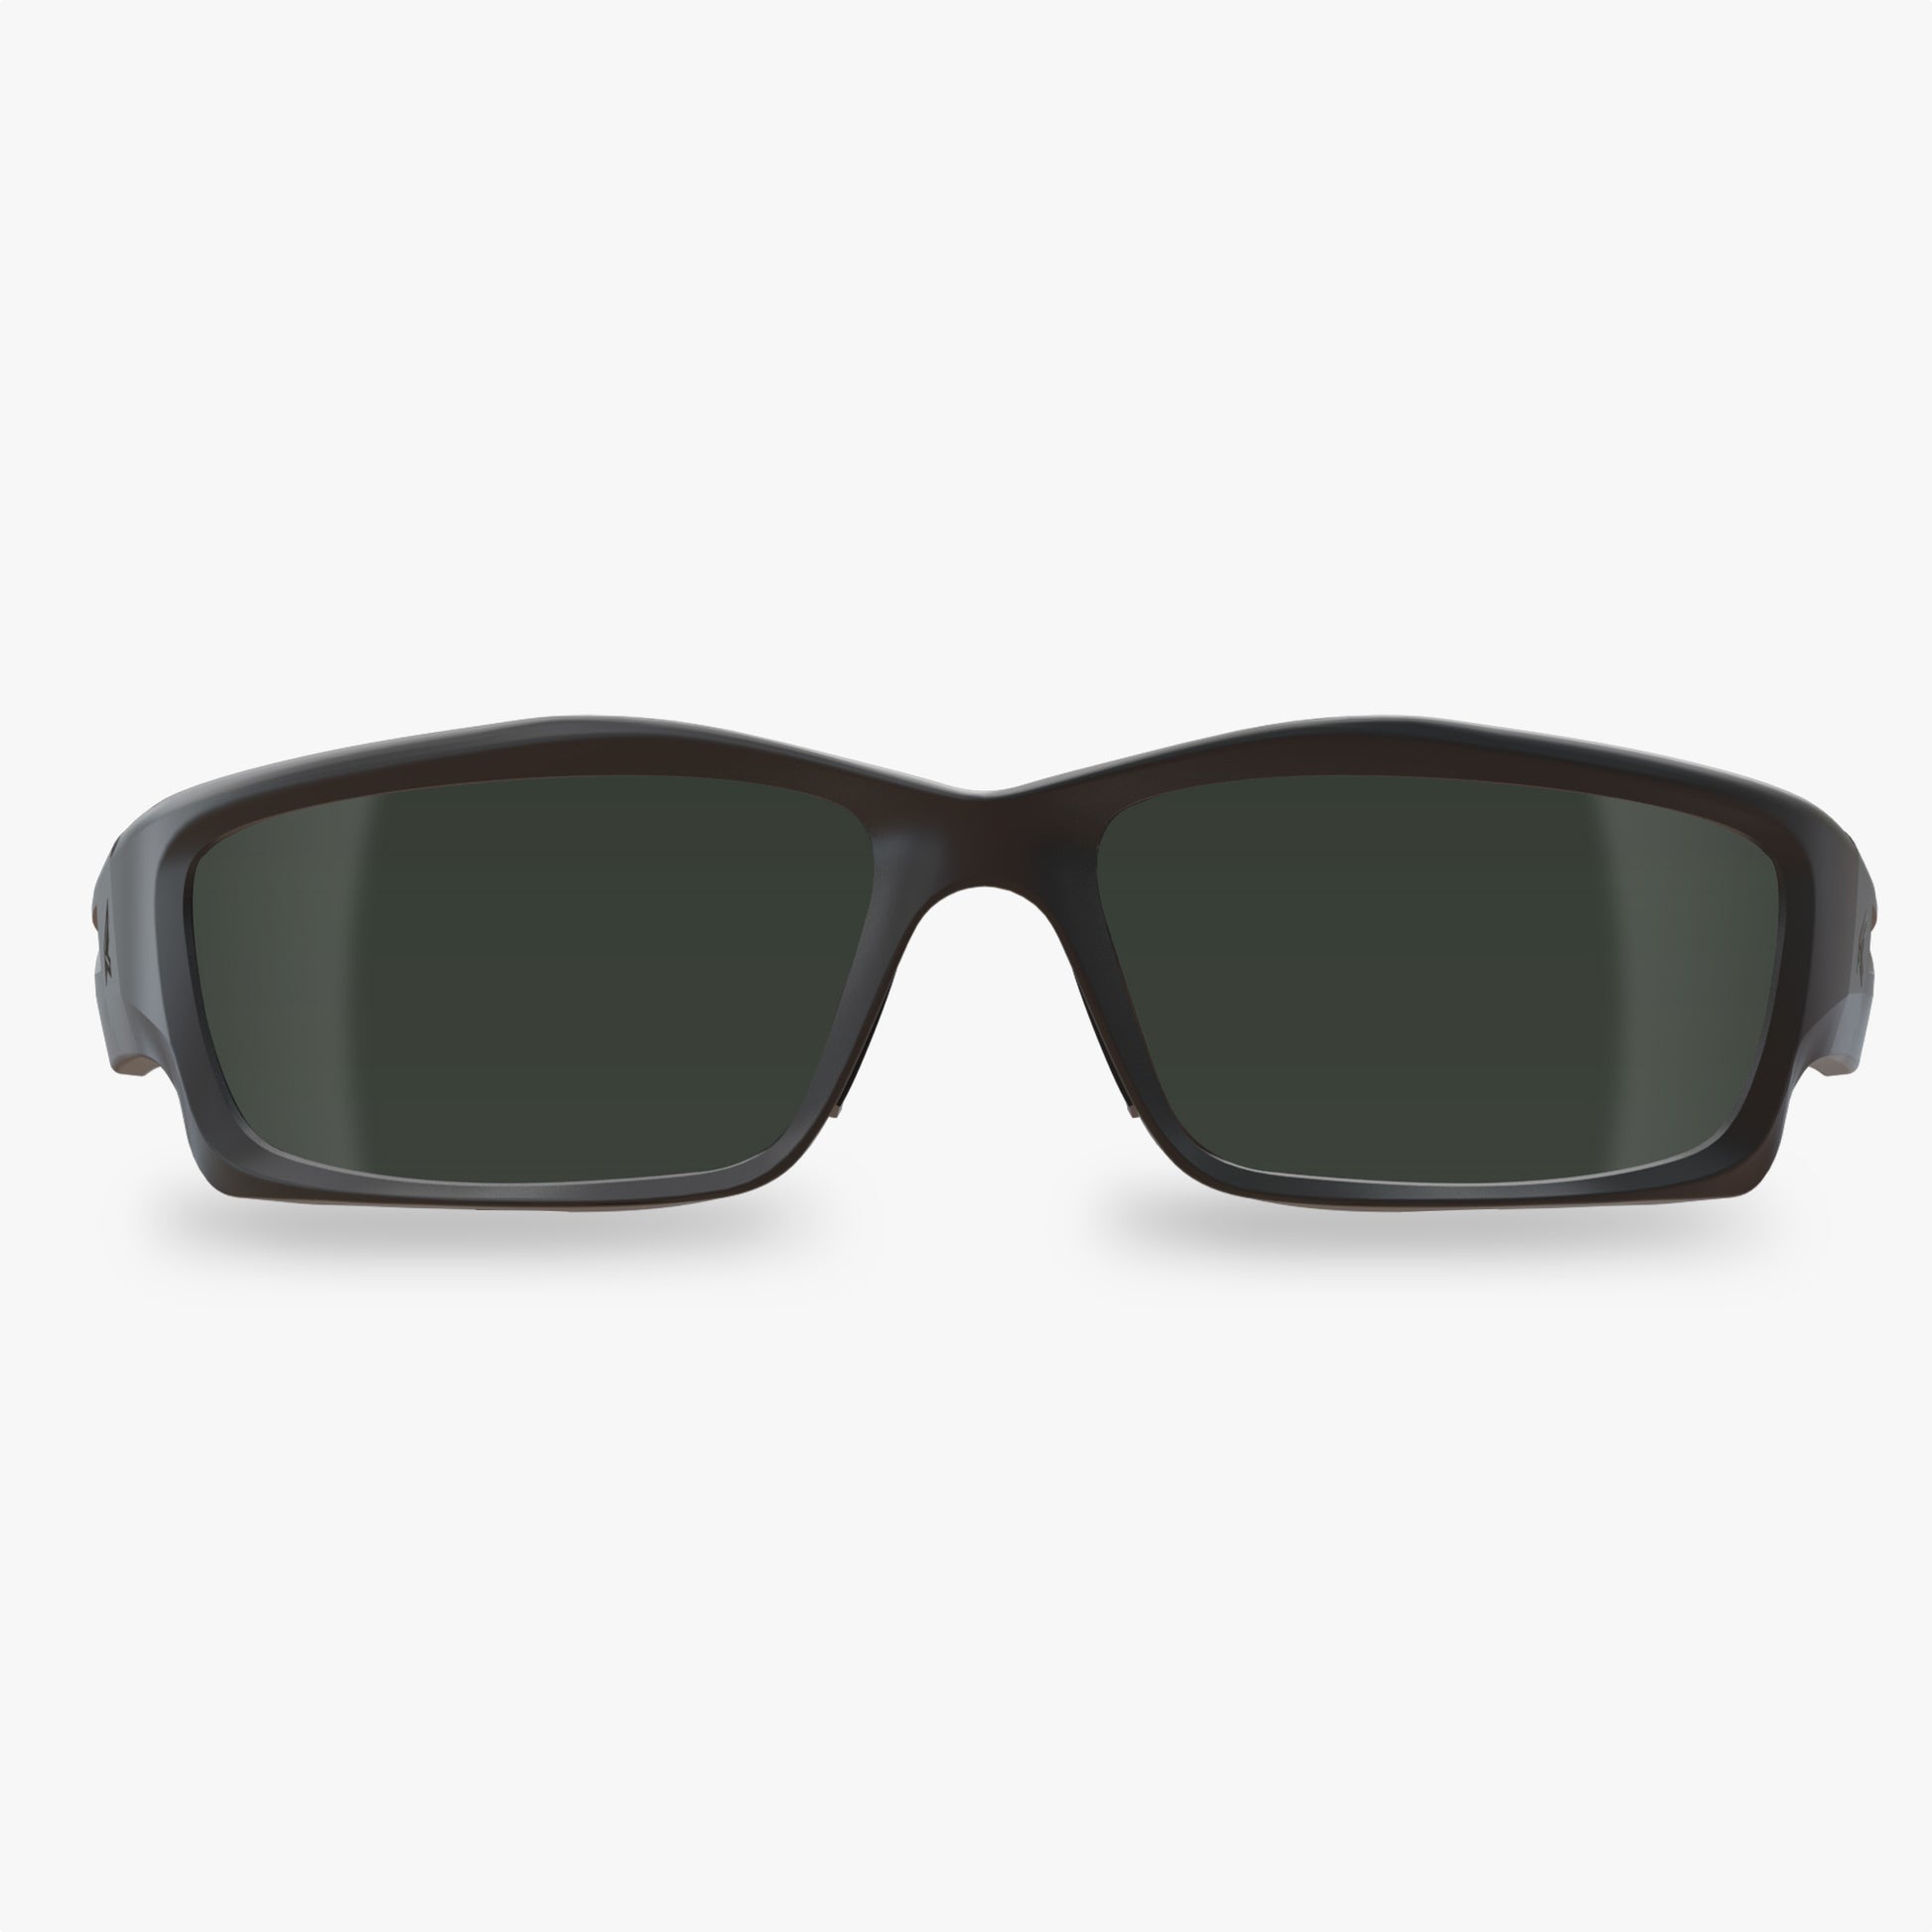 Edge Eyewear Safety Glasses Blade Runner - Black Frame Clear Lens